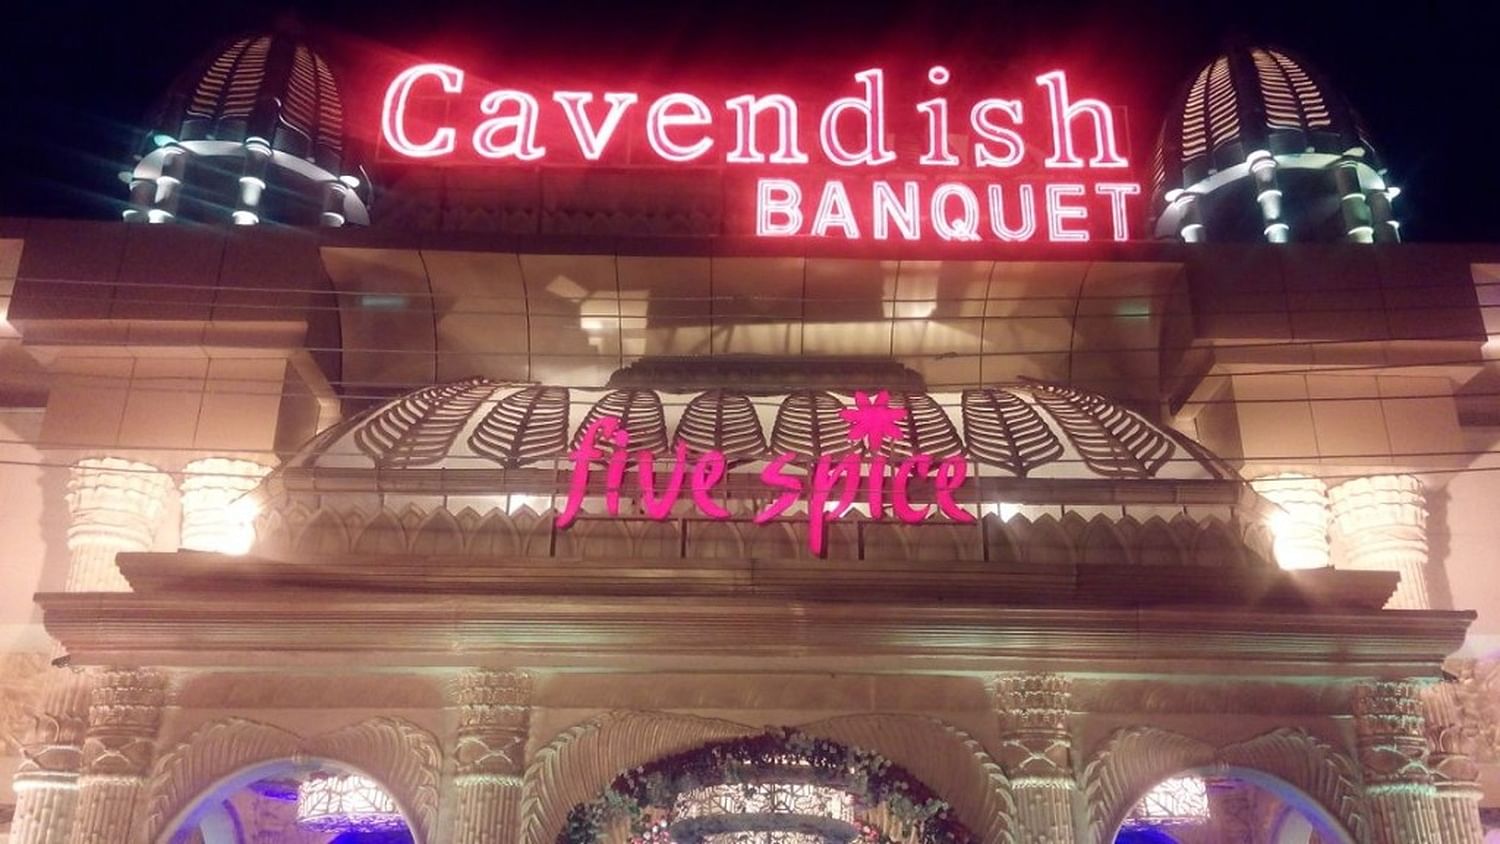 Cavendish Banquet in Rohtak Road, Delhi